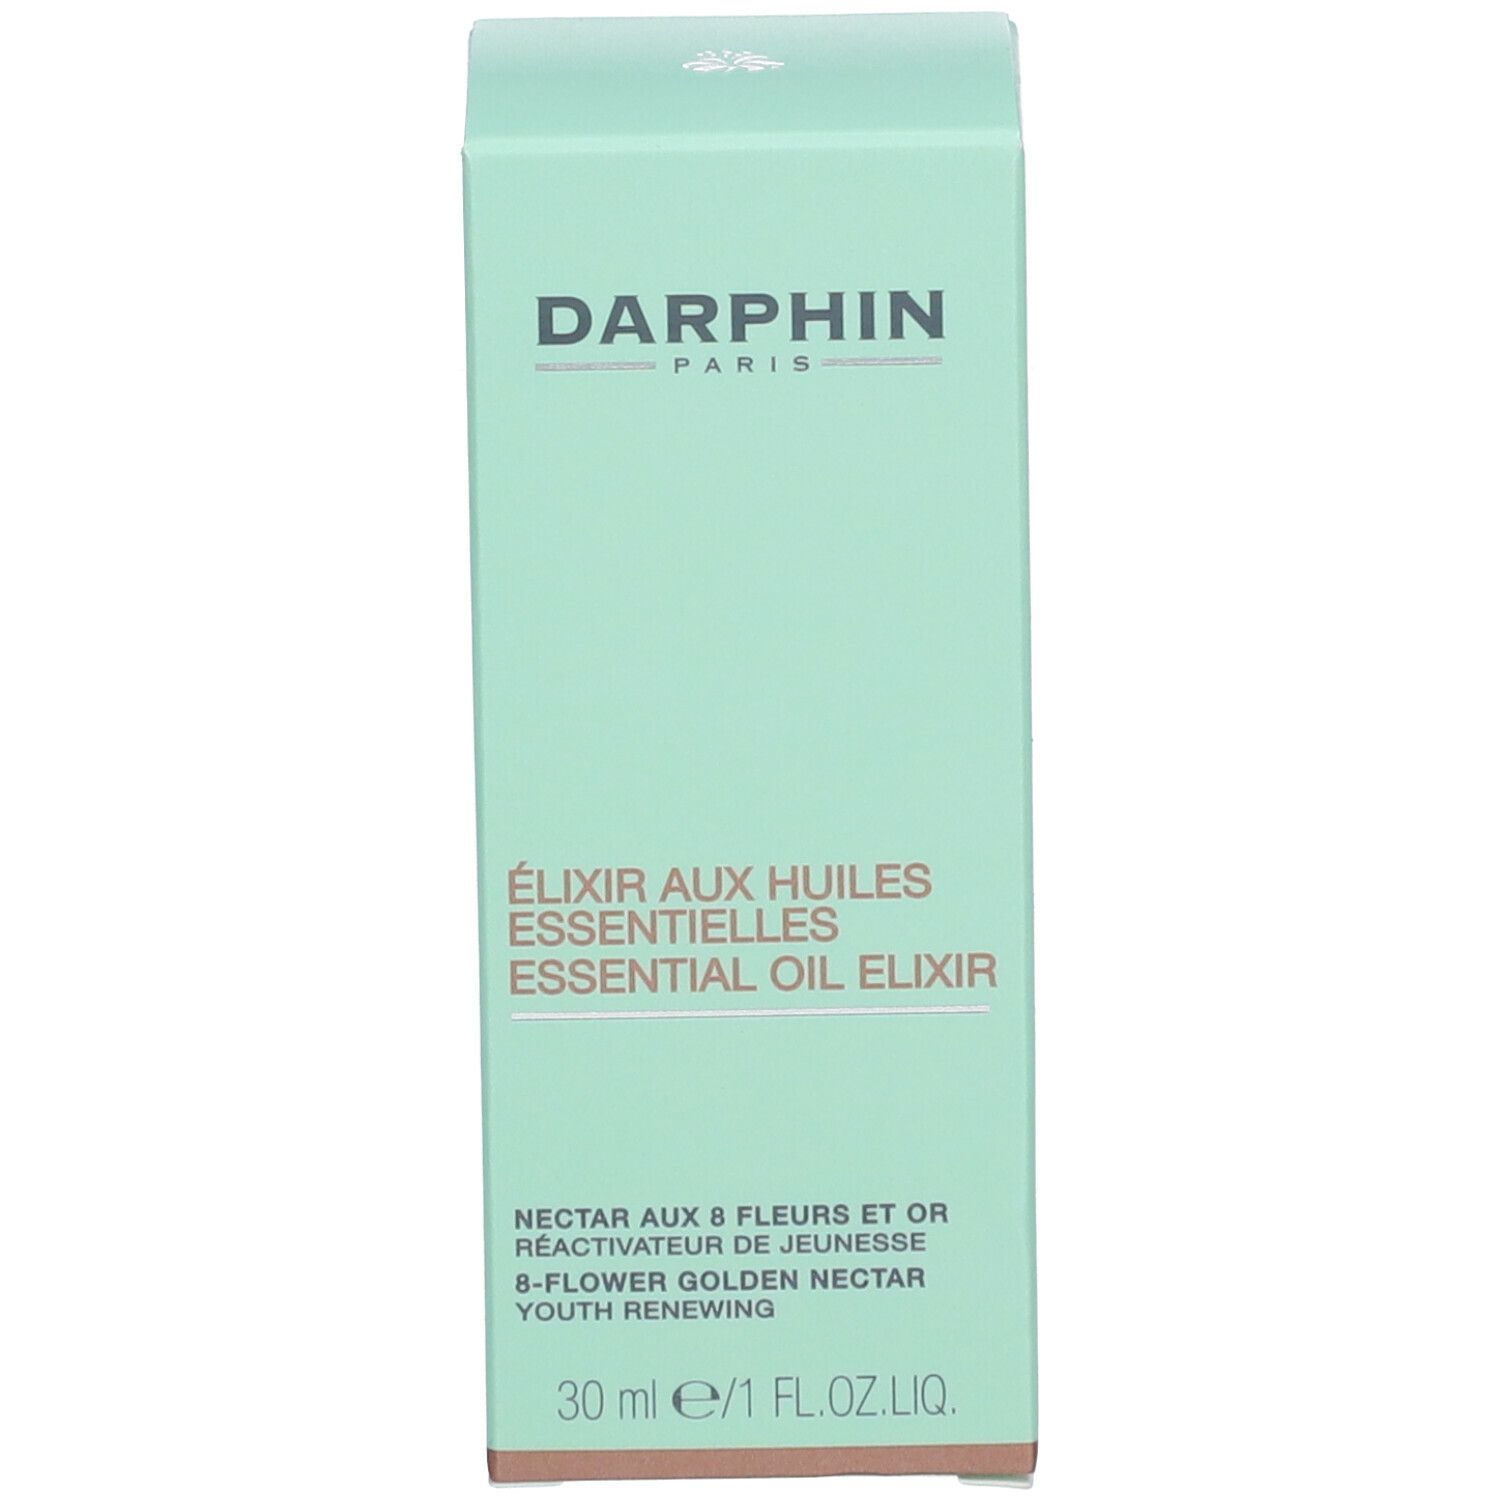 DARPHIN 8-Flower Nectar APOTHEKE Golden ml 30 SHOP - Gesichtsöl